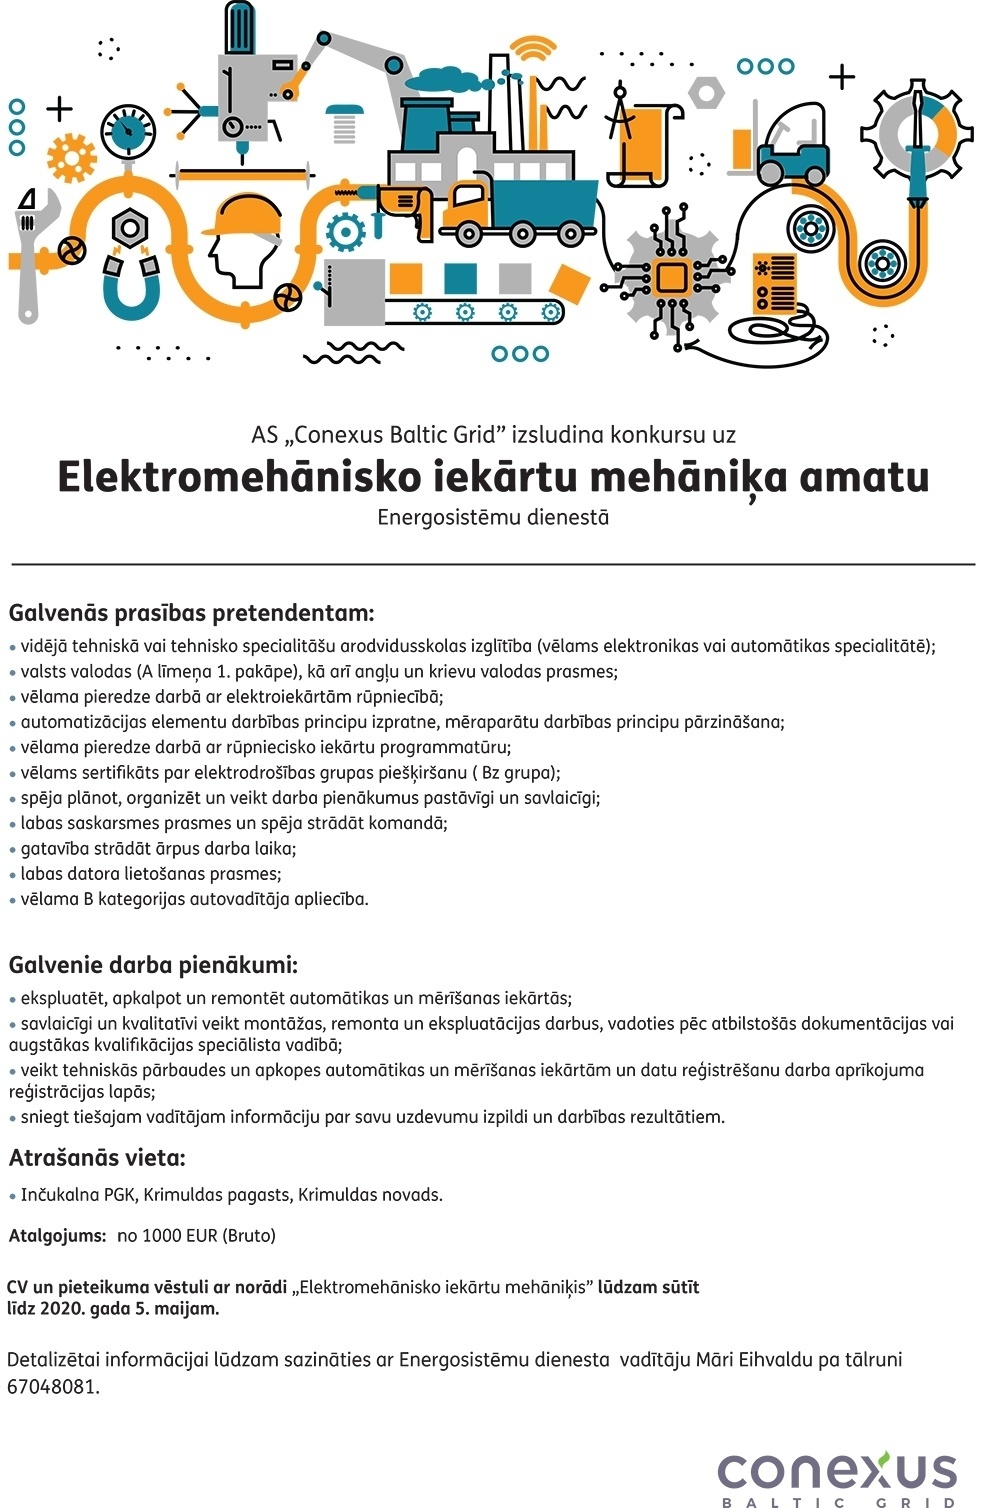 Conexus Baltic Grid, A/S Elektromehānisko iekārtu mehāniķis/-e